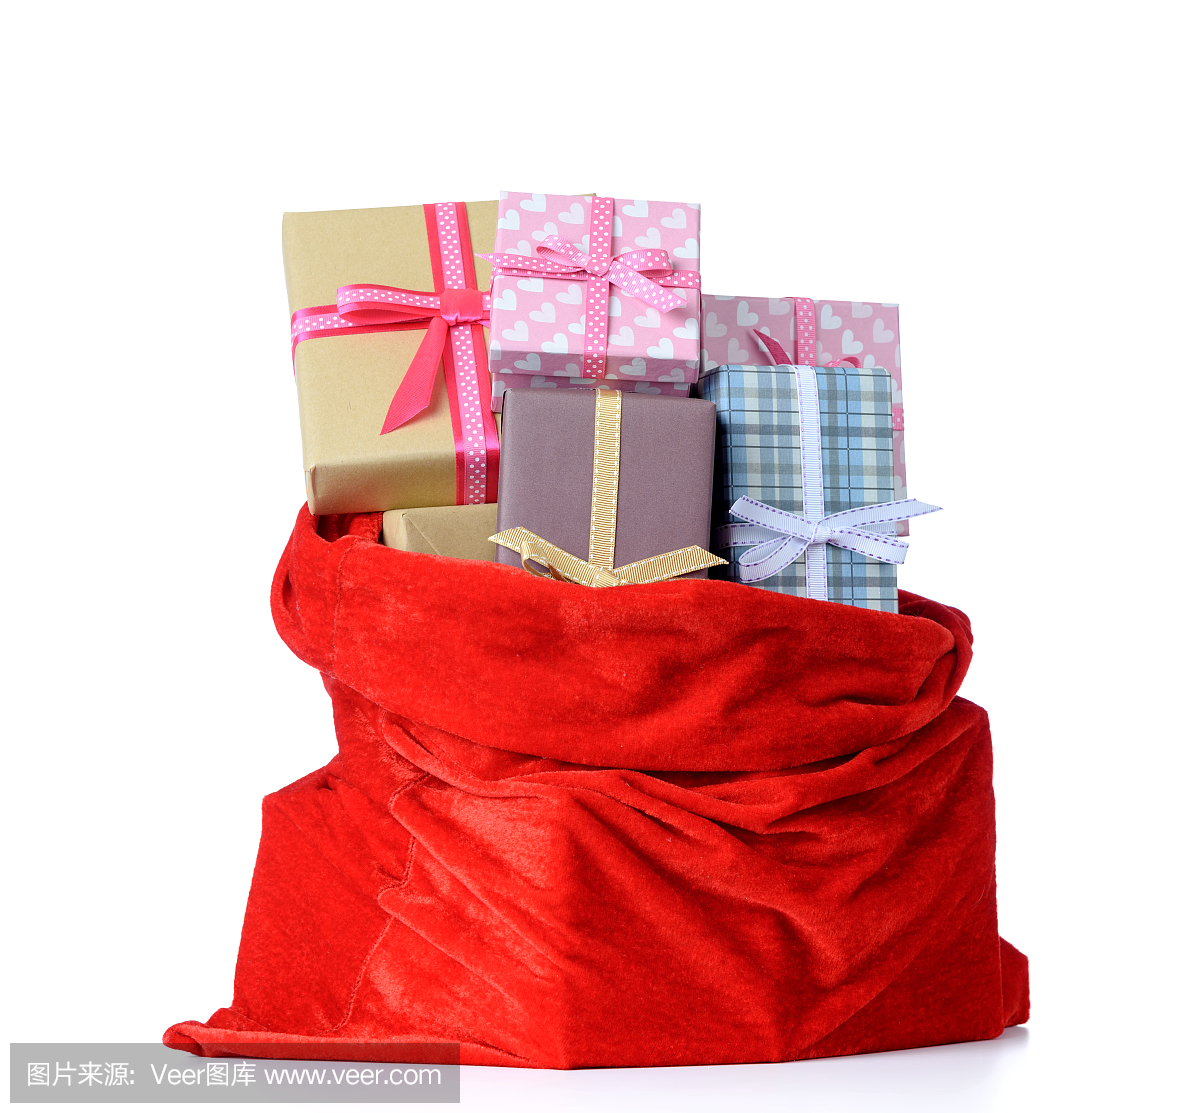 充分圣诞老人红色袋子有礼物的圣诞节箱子在白